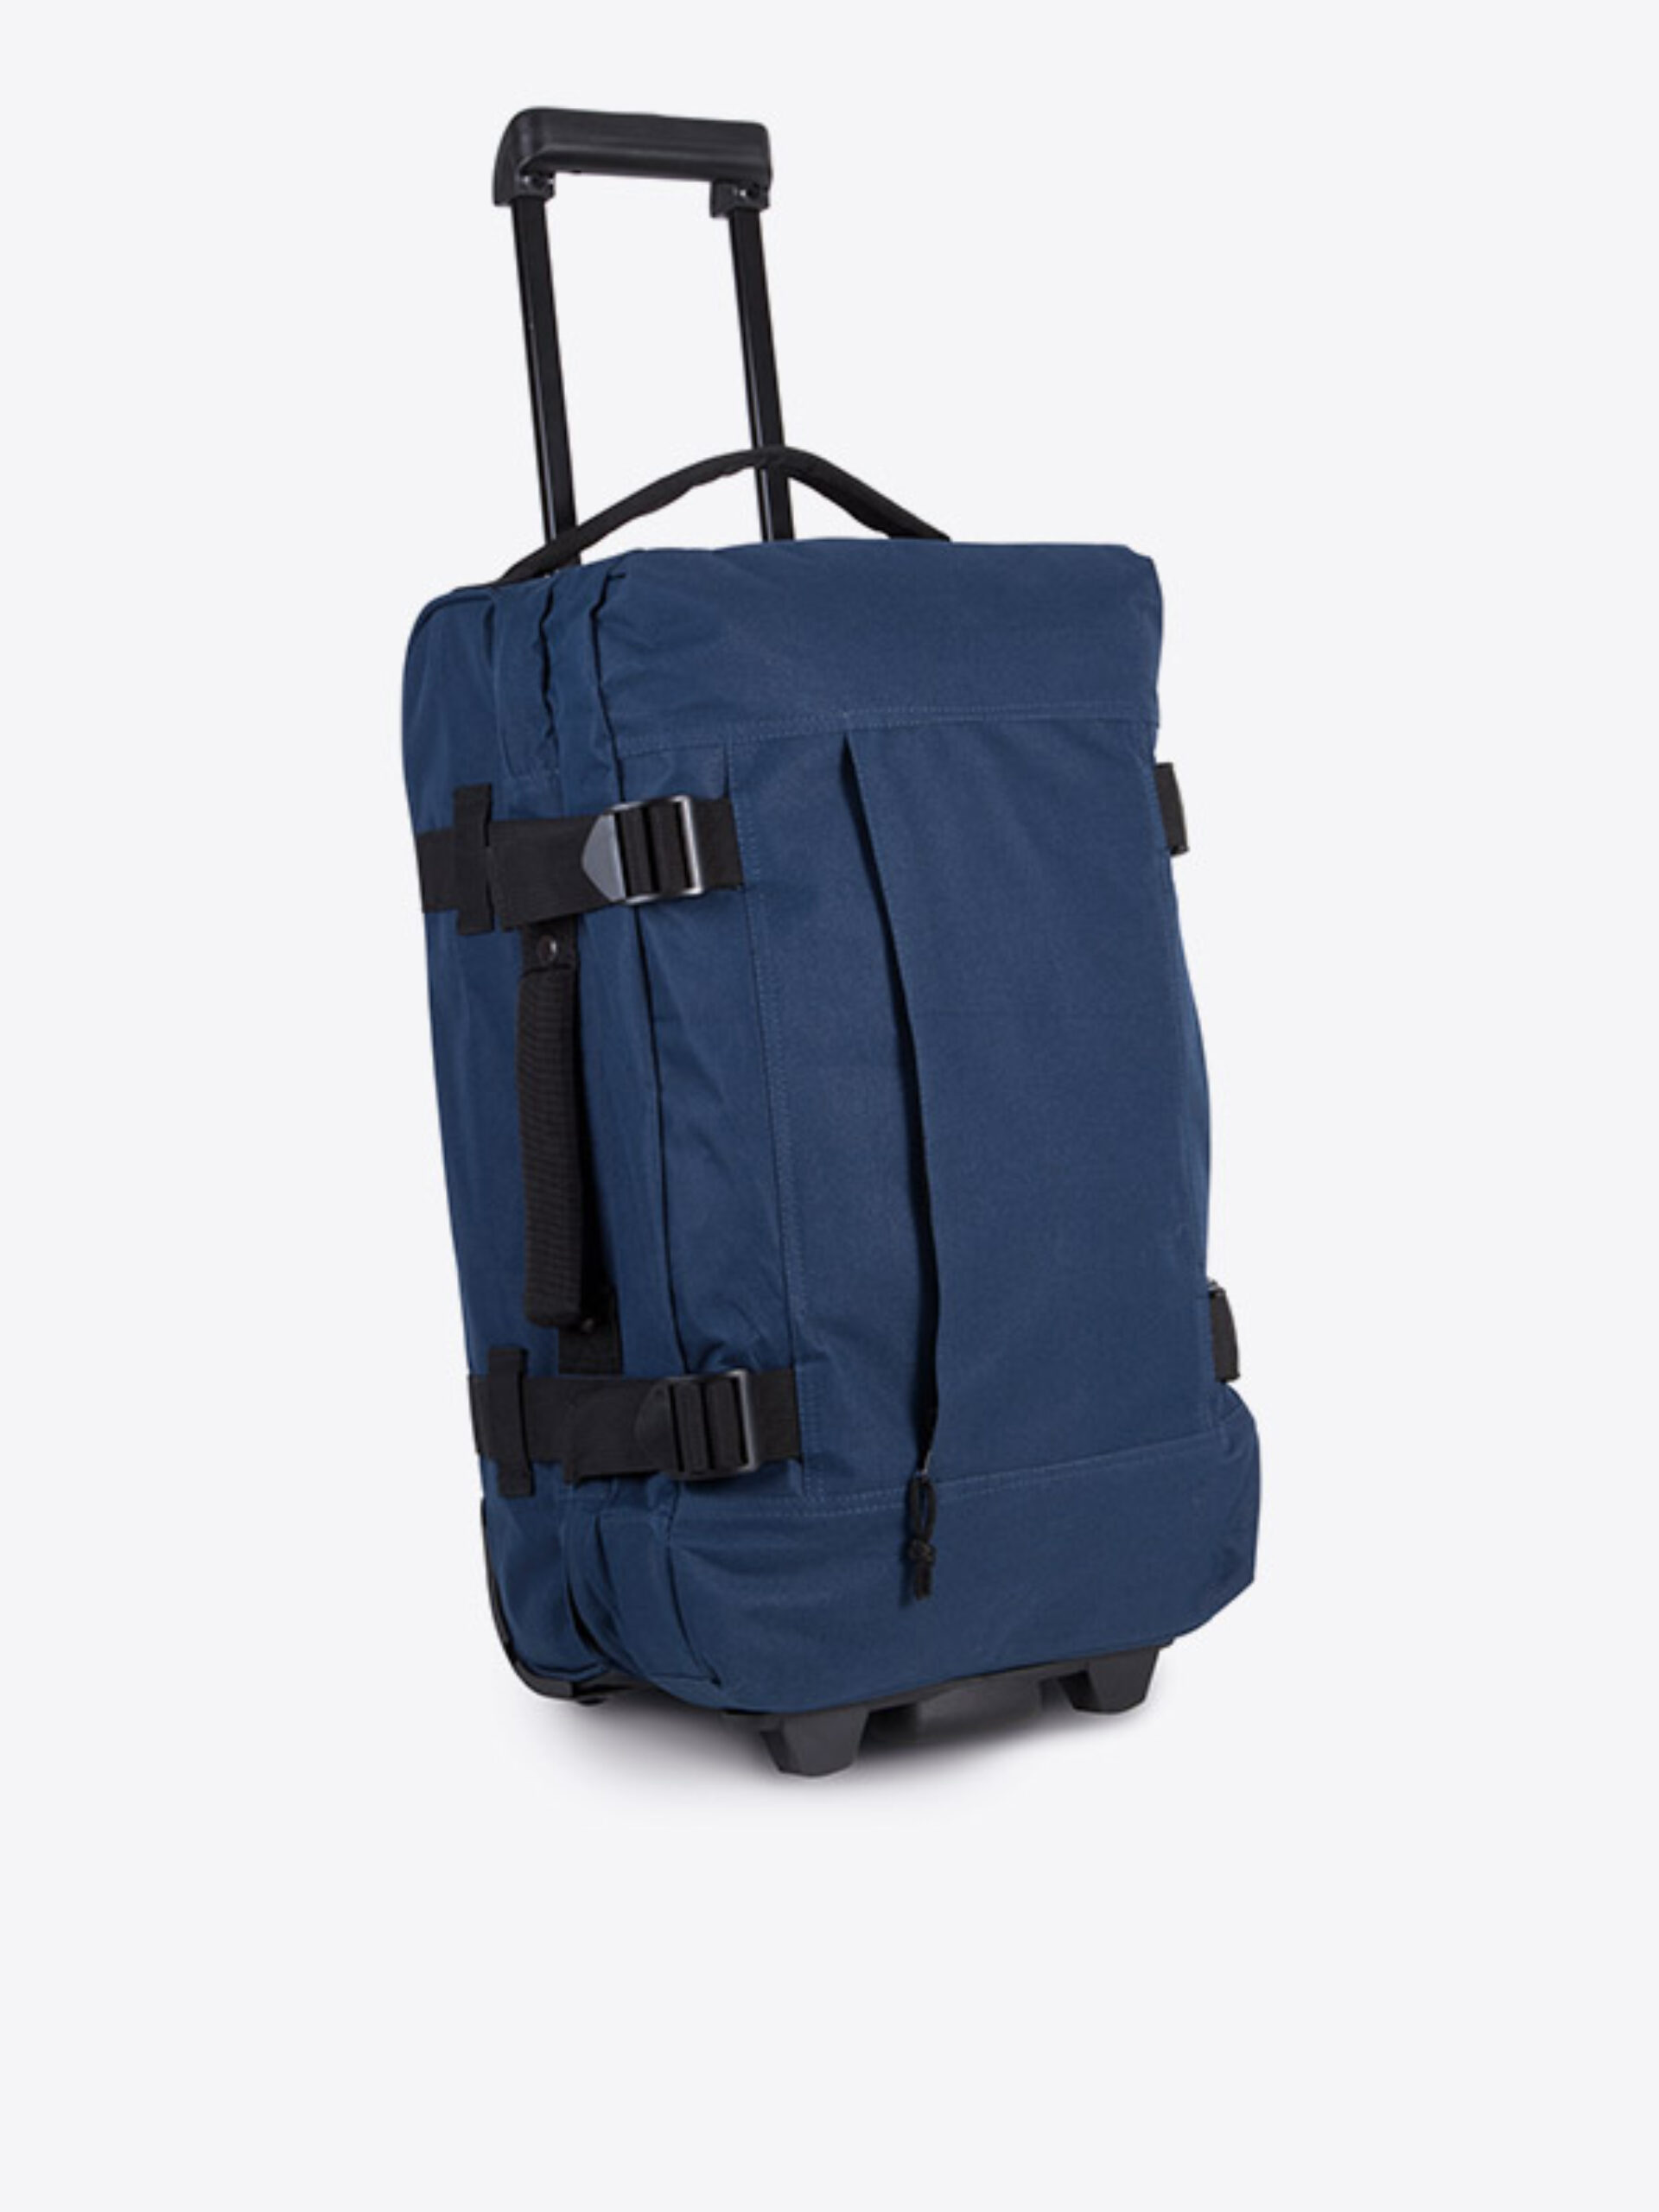 Rolltasche Easy Mit Logo Bedrucken Werbetraeger Reisetasche Polyester Kabinen Tasche Handgepaeck Blau